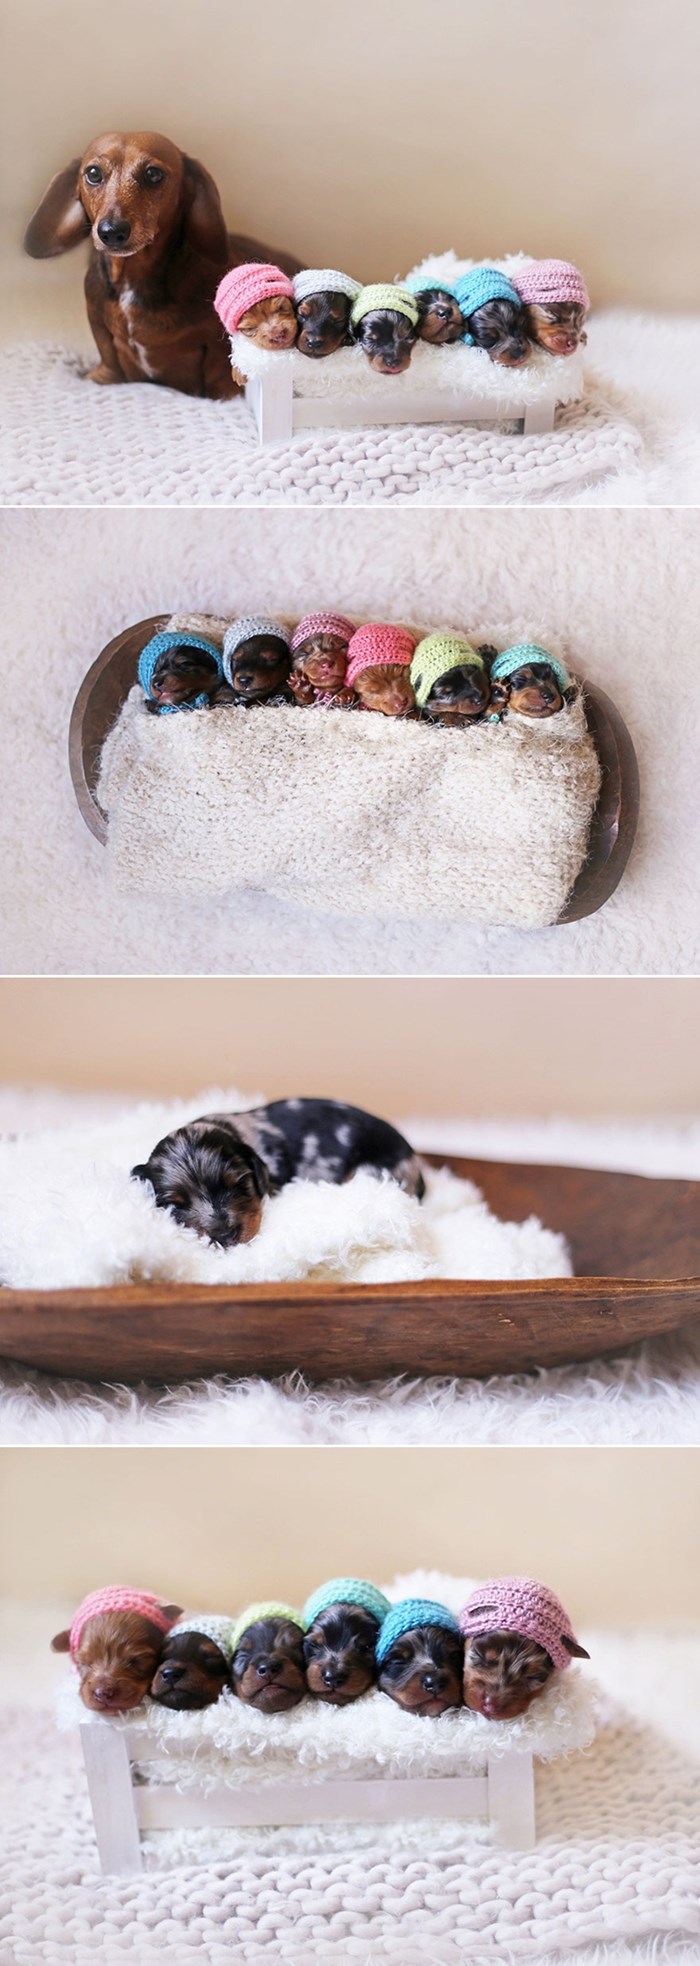 Ponosna mama pas-kobasica pozira sa slatkim novorođenim "kobasičicama"